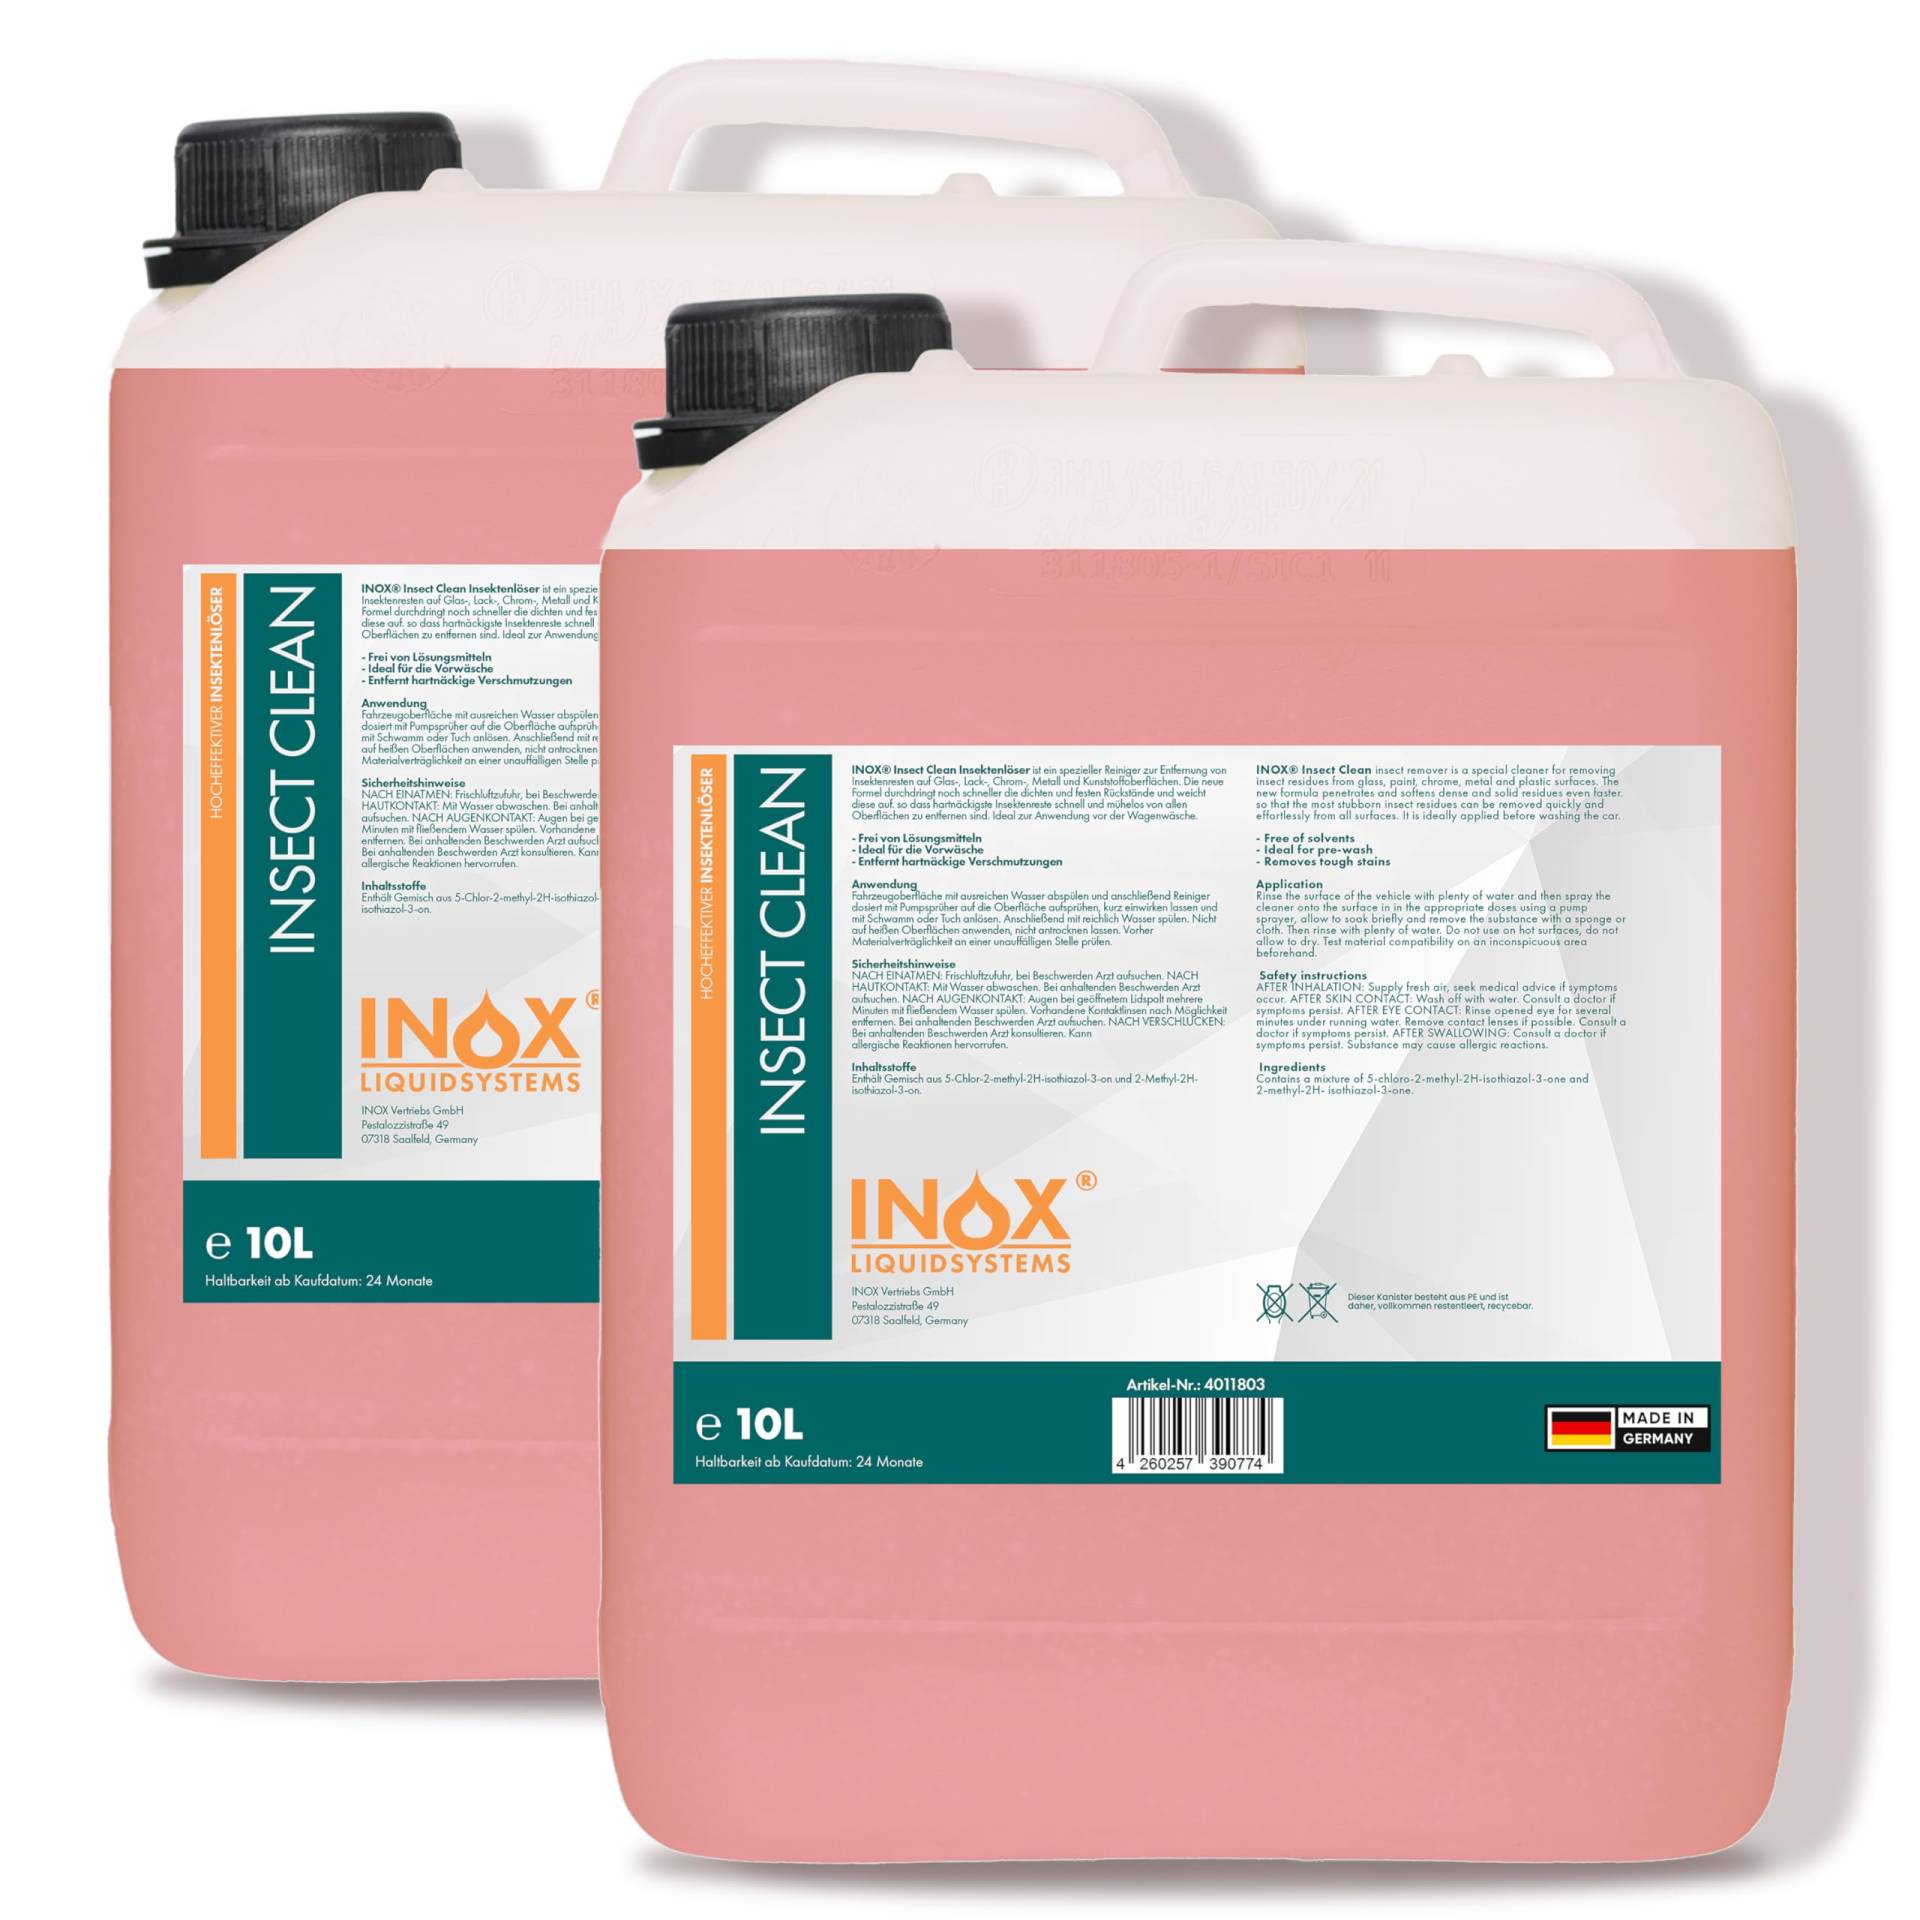 INOX - Hocheffektiver Insektenreiniger Auto 2x10L | KFZ-Insektenentferner sehr Lack schonend | Insektenlöser für Lack, Glas, Kunststoff & Chrom geeignet von INOX-LIQUIDSYSTEMS